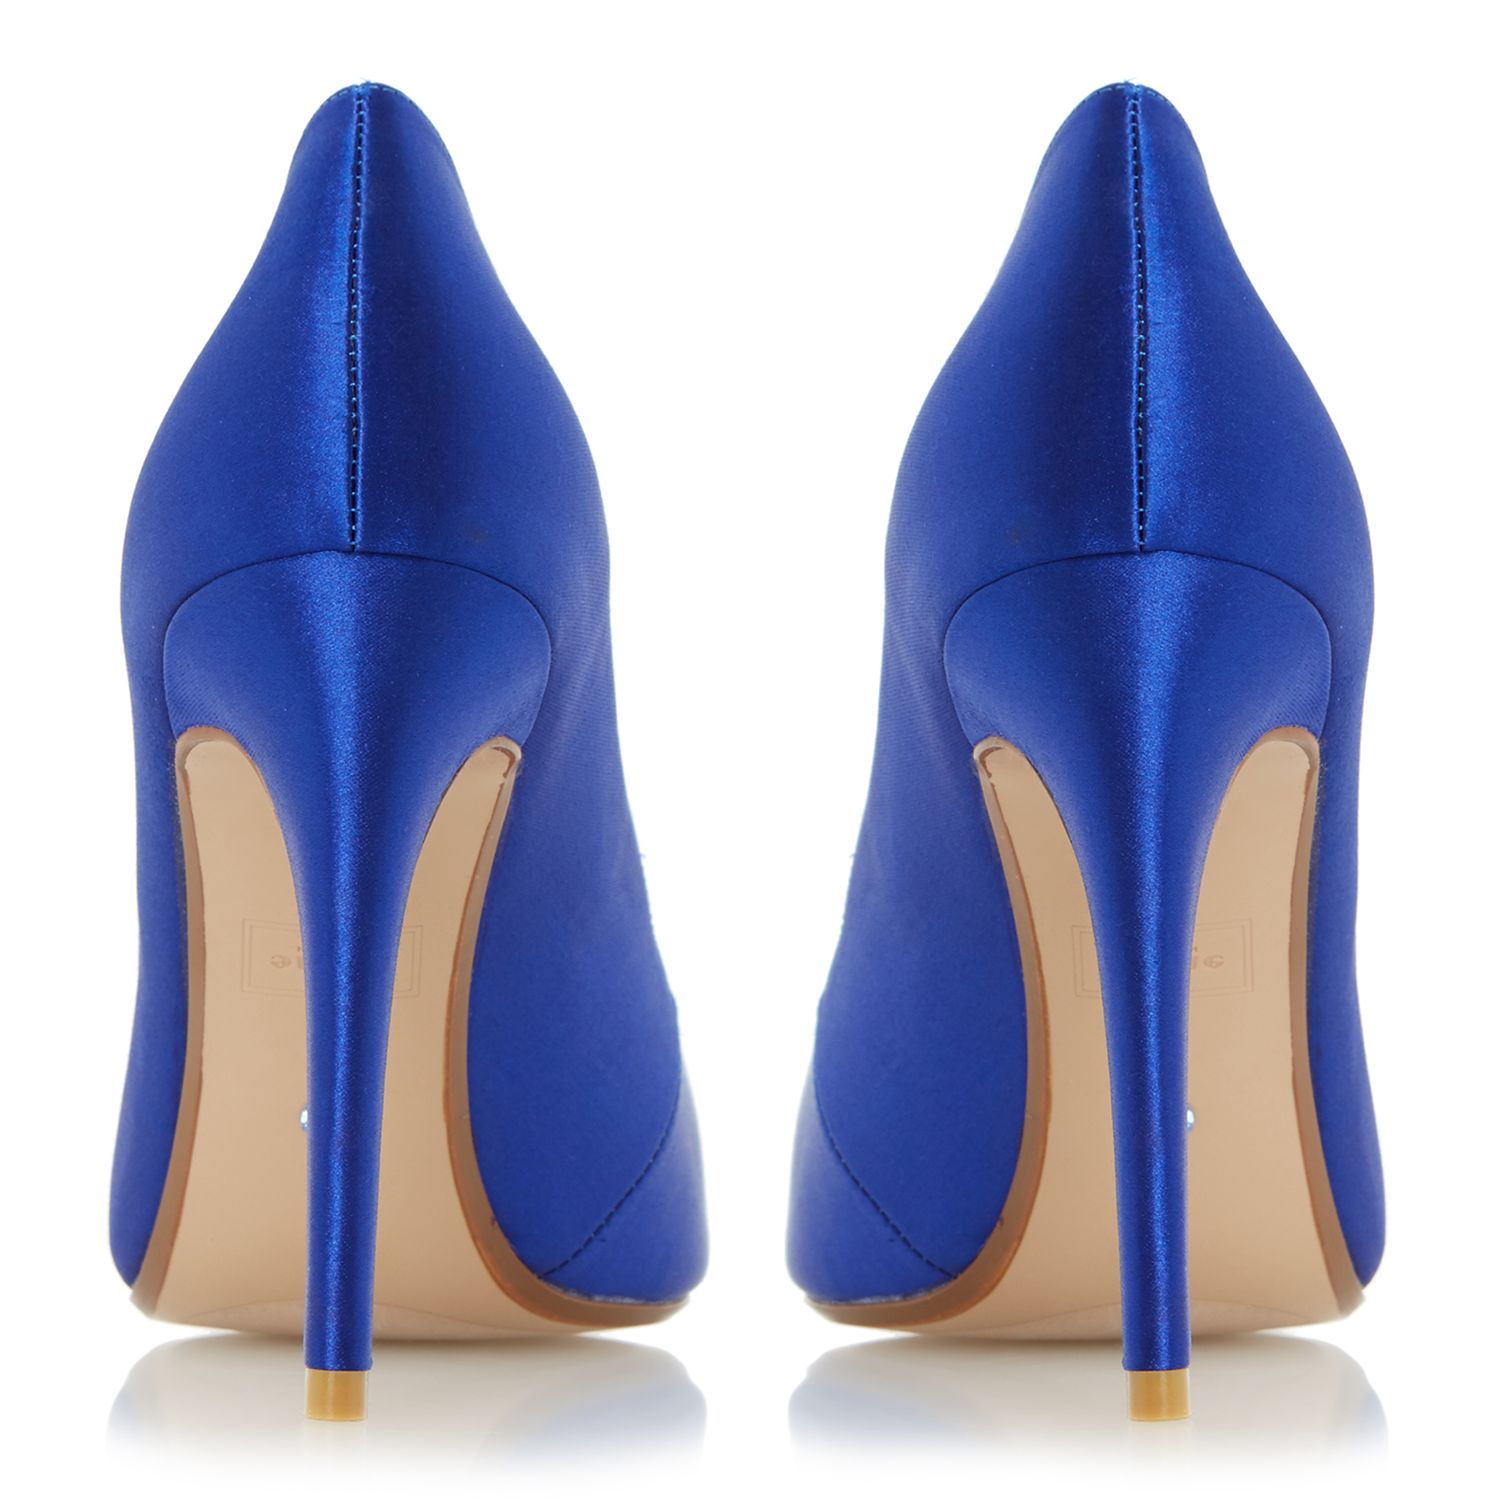 blue satin court shoes